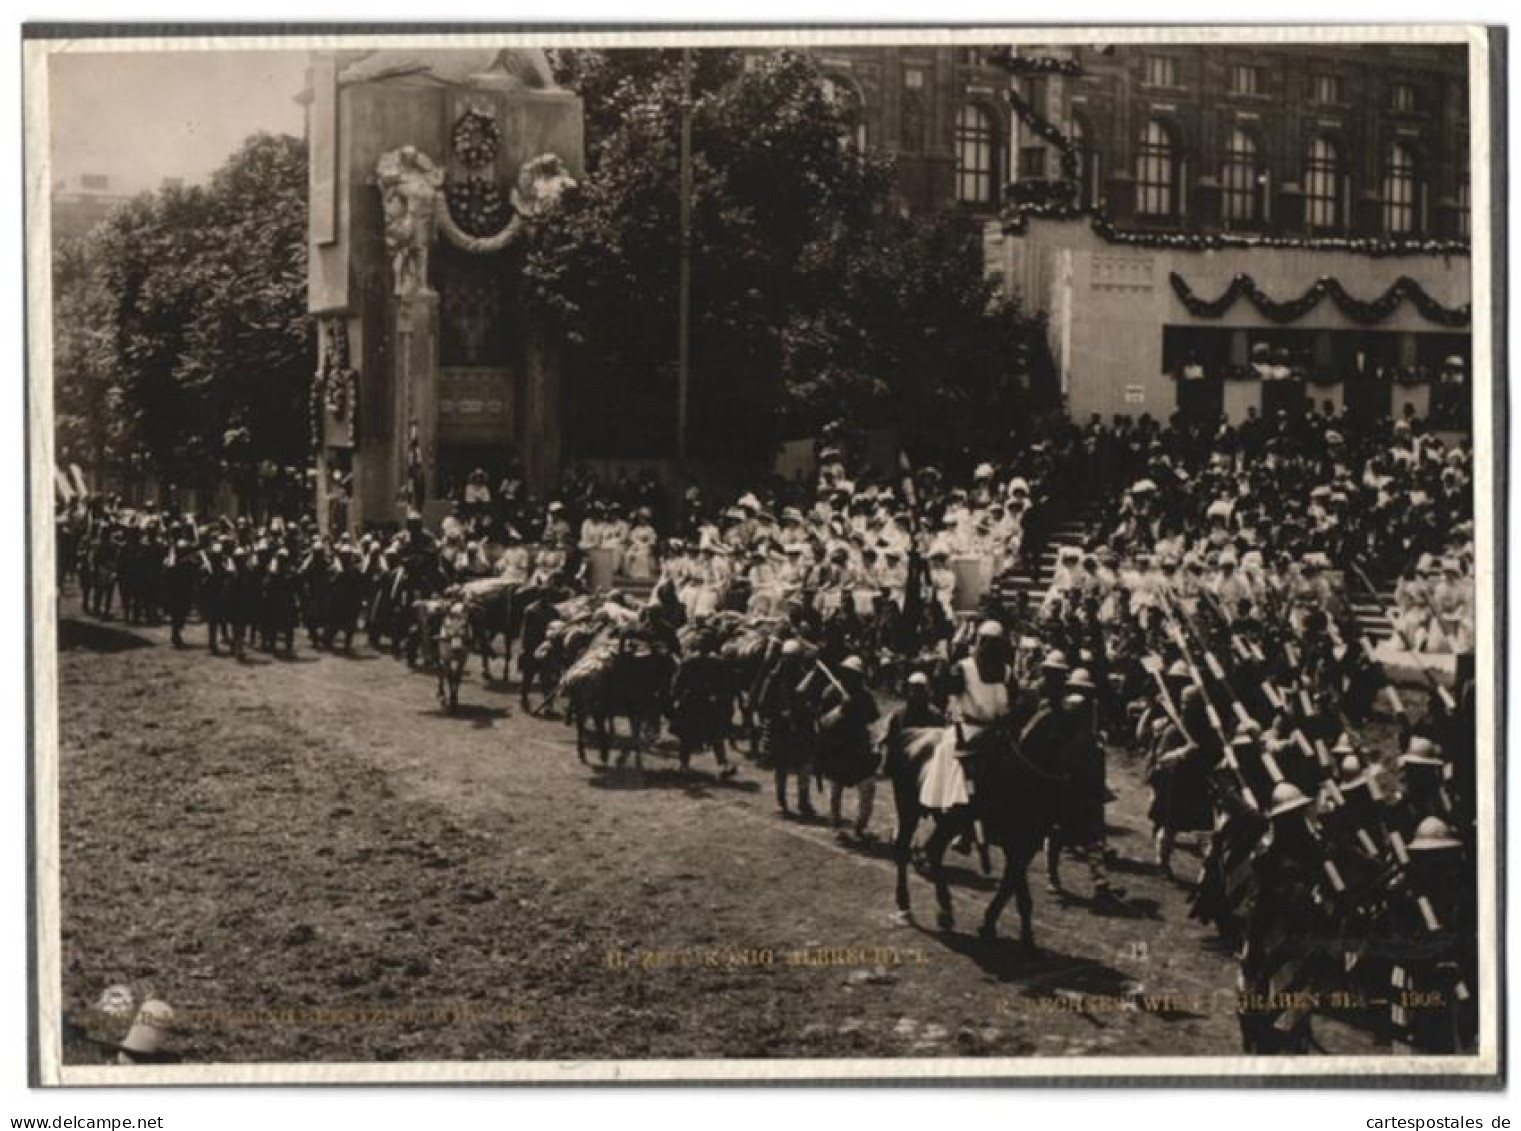 Archiv-Fotografie R. Lechner, Wien, Ansicht Wien, Kaiser-Huldigungs-Festzug 1908, Zeit König Albrecht I.  - Famous People